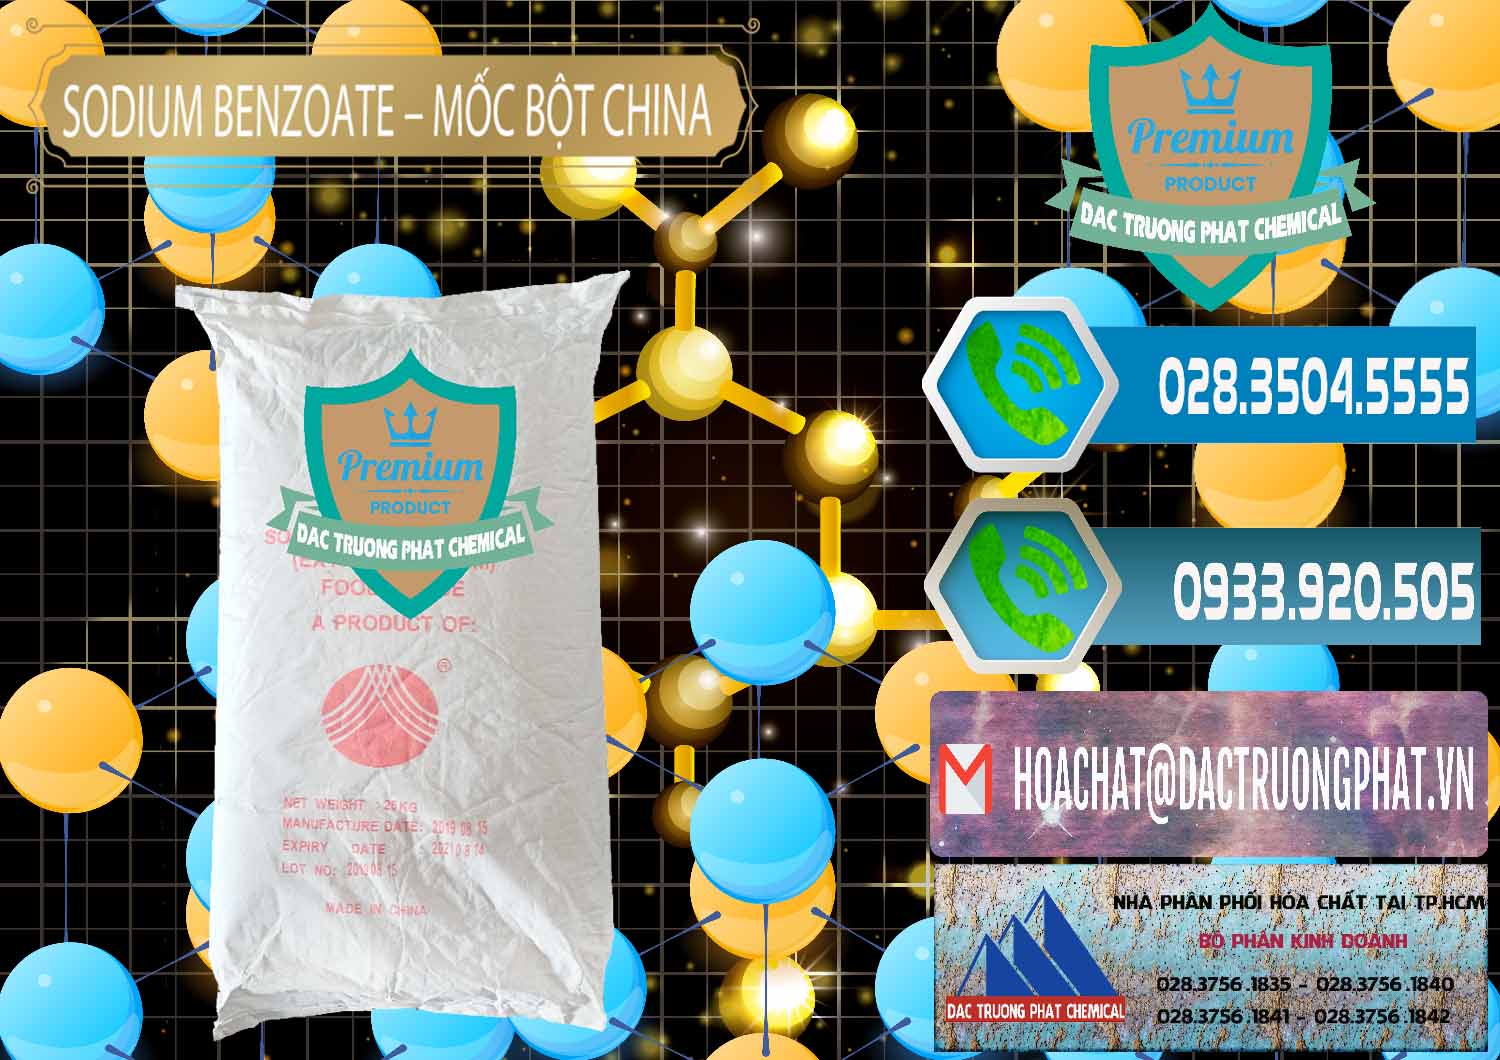 Bán - cung ứng Sodium Benzoate - Mốc Bột Chữ Cam Food Grade Trung Quốc China - 0135 - Công ty chuyên bán _ cung cấp hóa chất tại TP.HCM - congtyhoachat.net